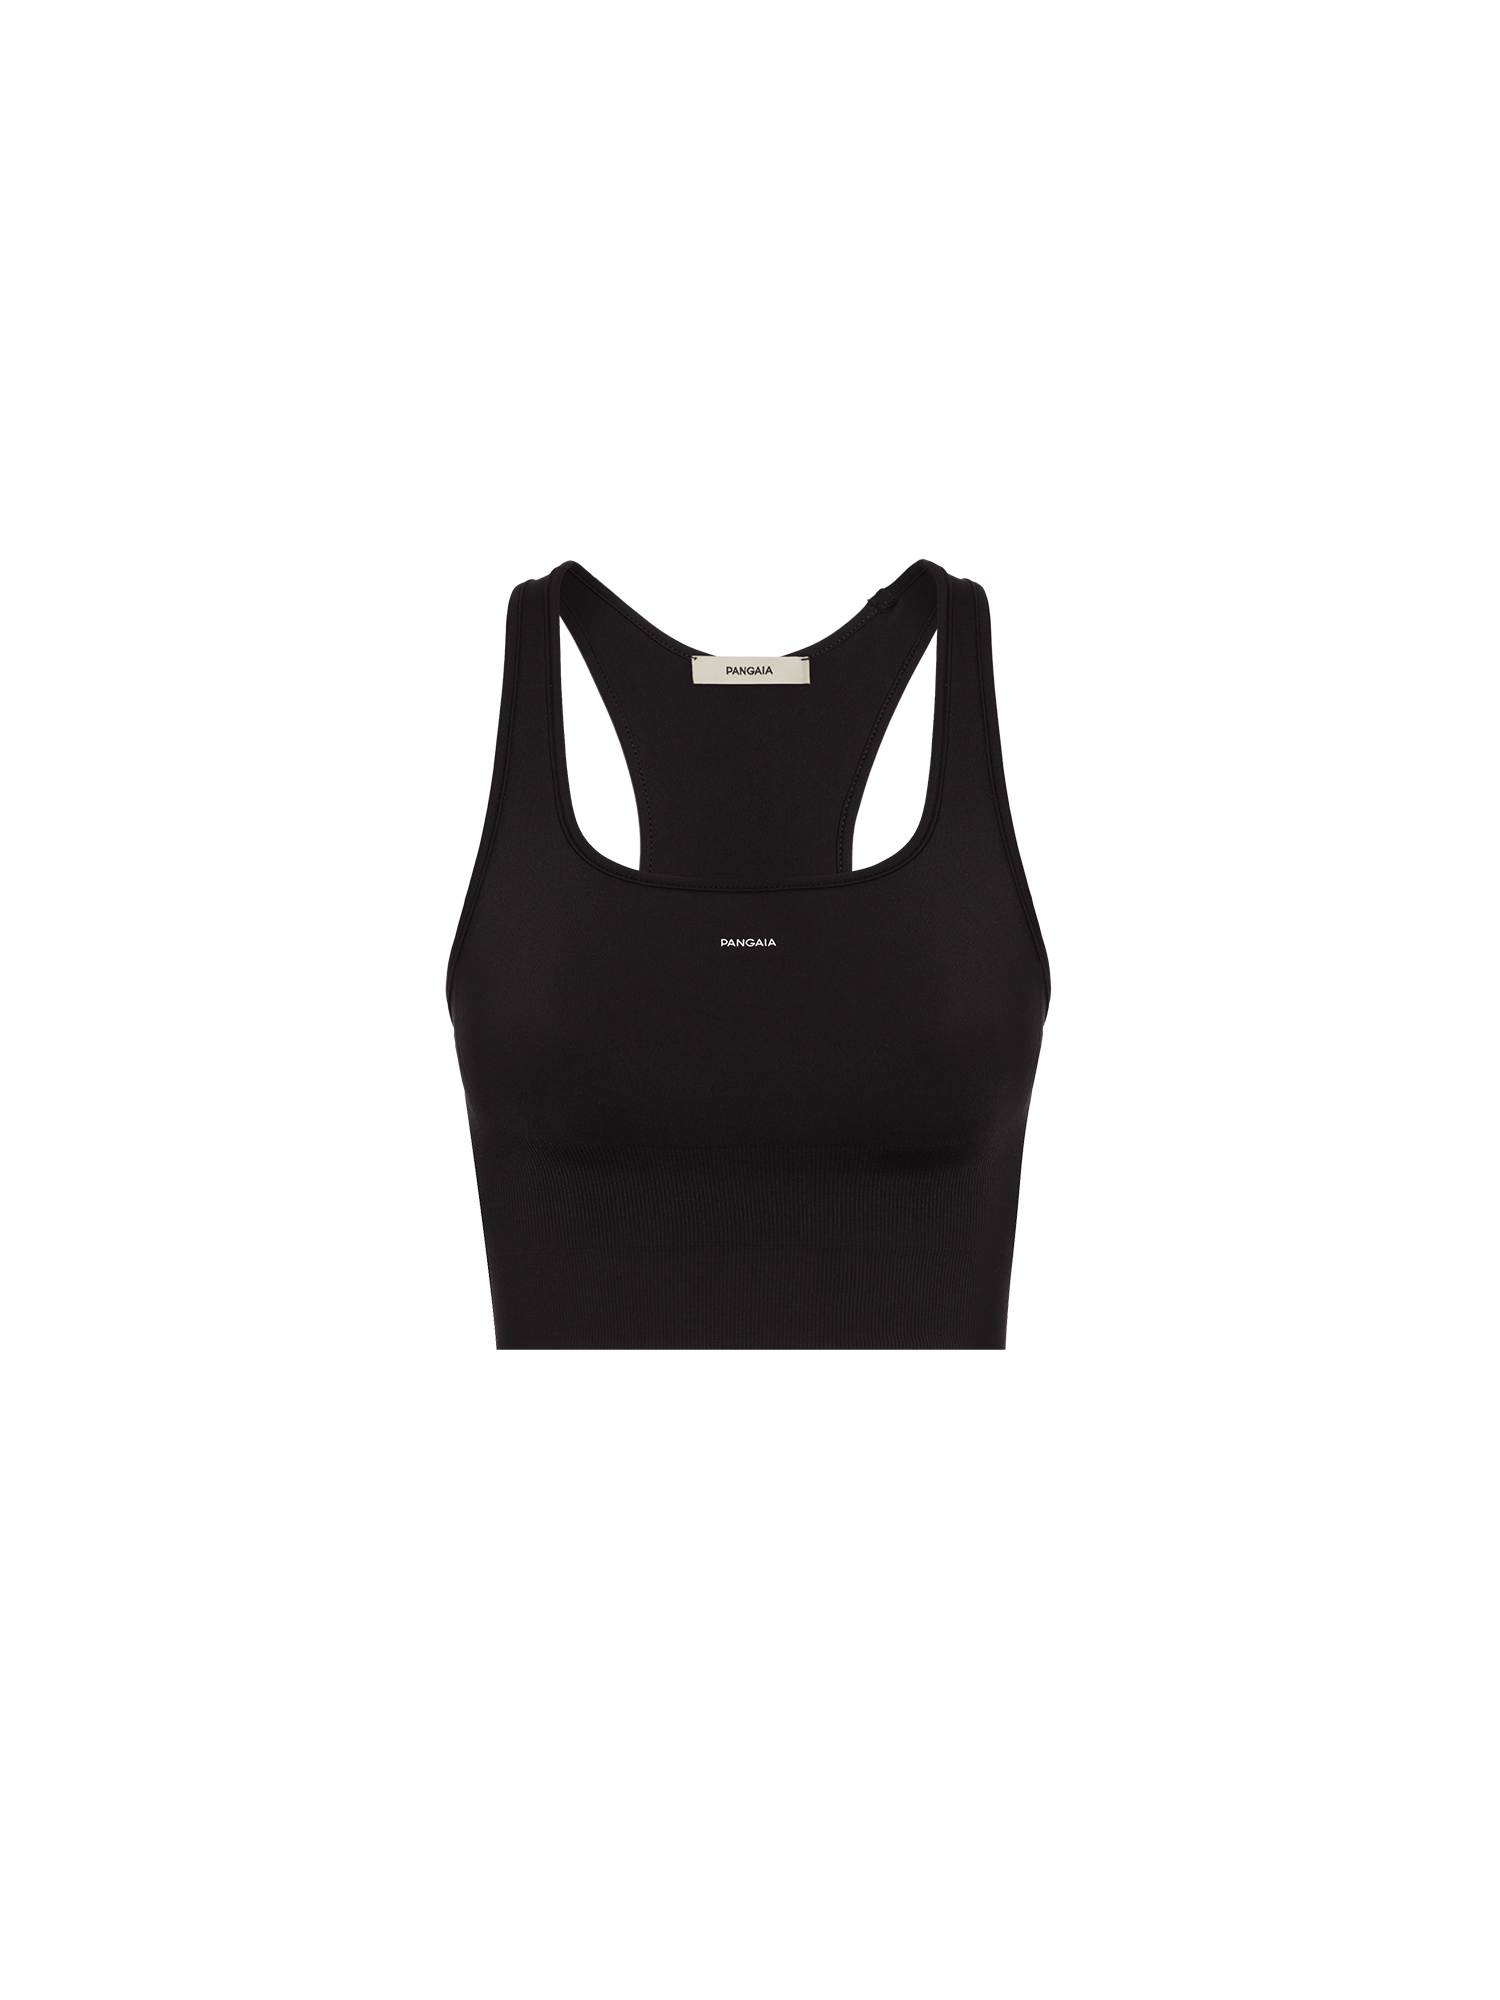 Women's Activewear Gym Tops - Black